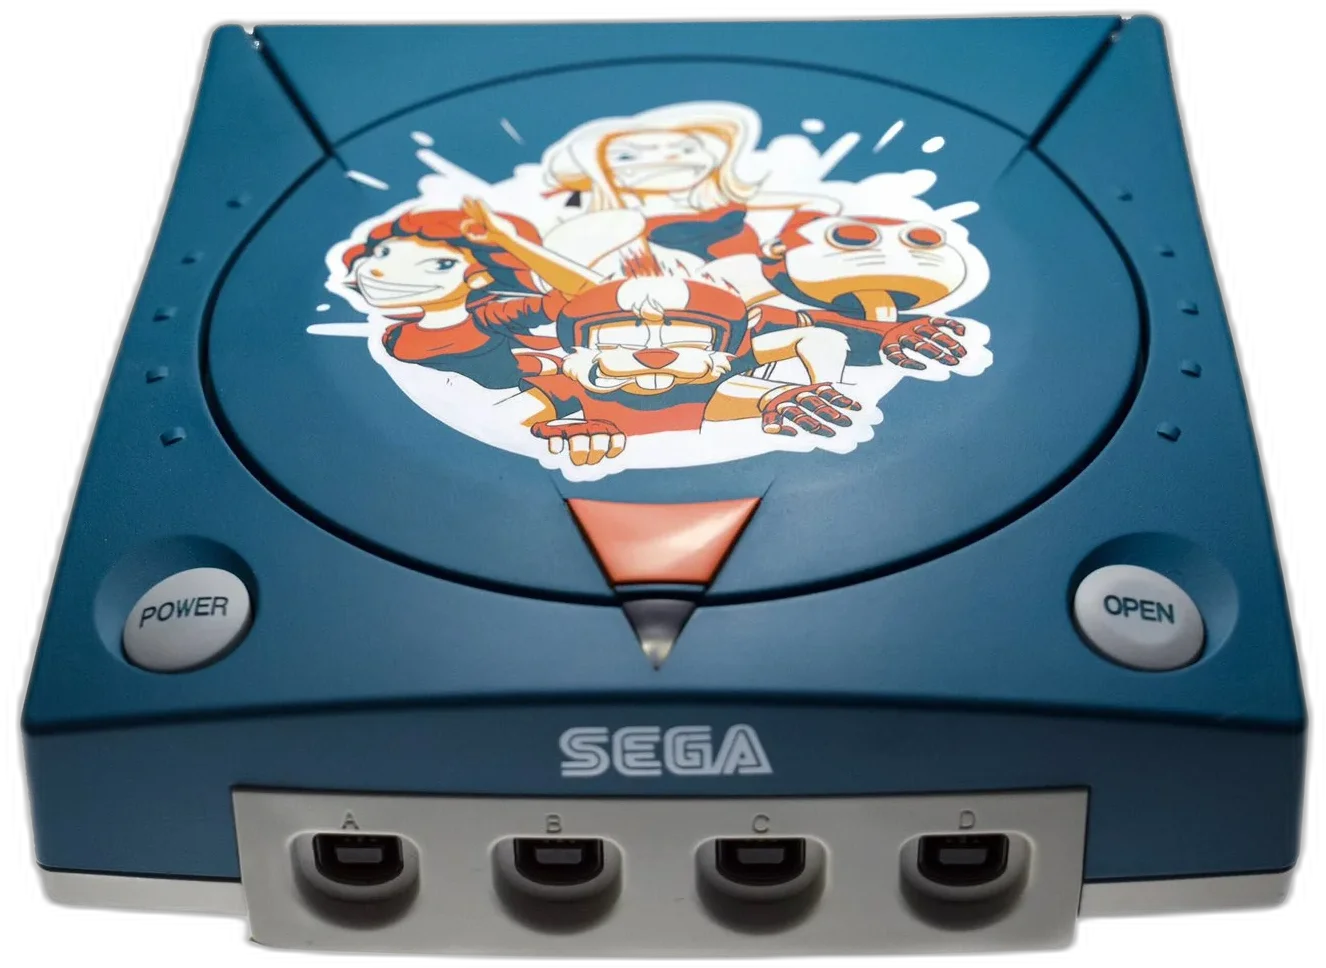  Sega Dreamcast Alice Dreams Console